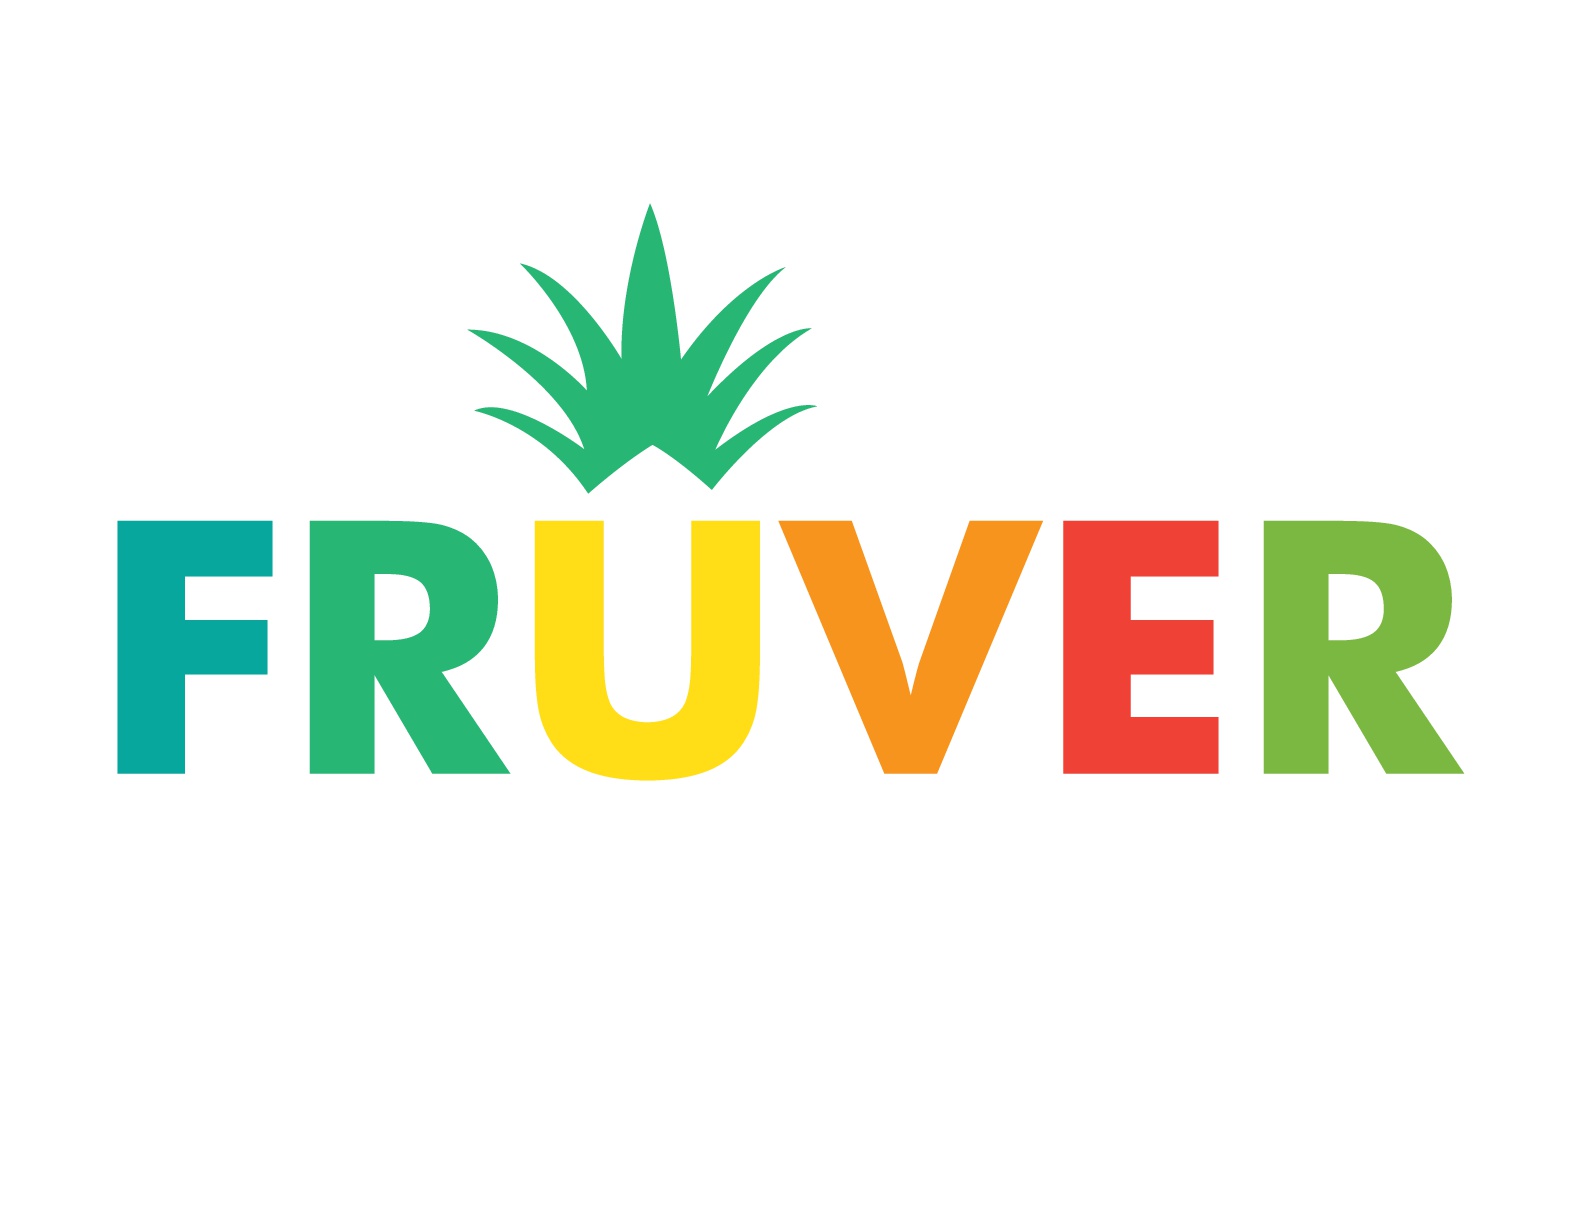 Productora y Exportadora de Frutas y Verduras FRUVER S.A